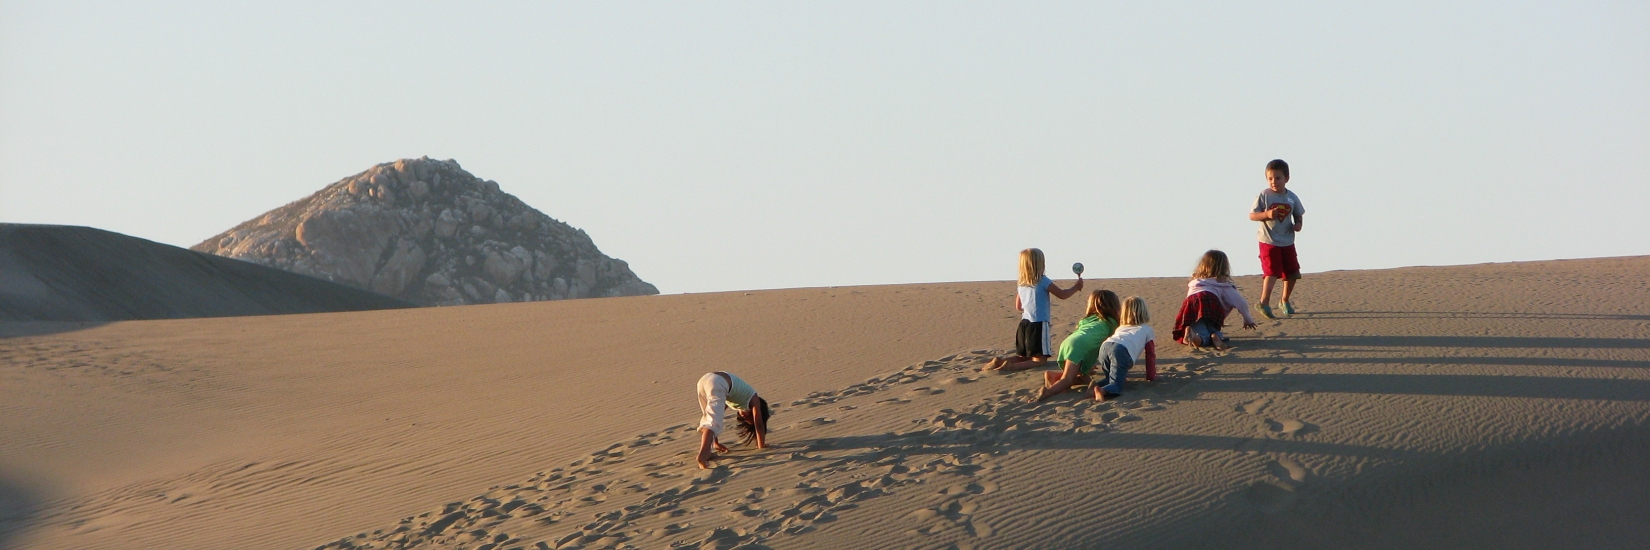 Kids Playing on Dunes